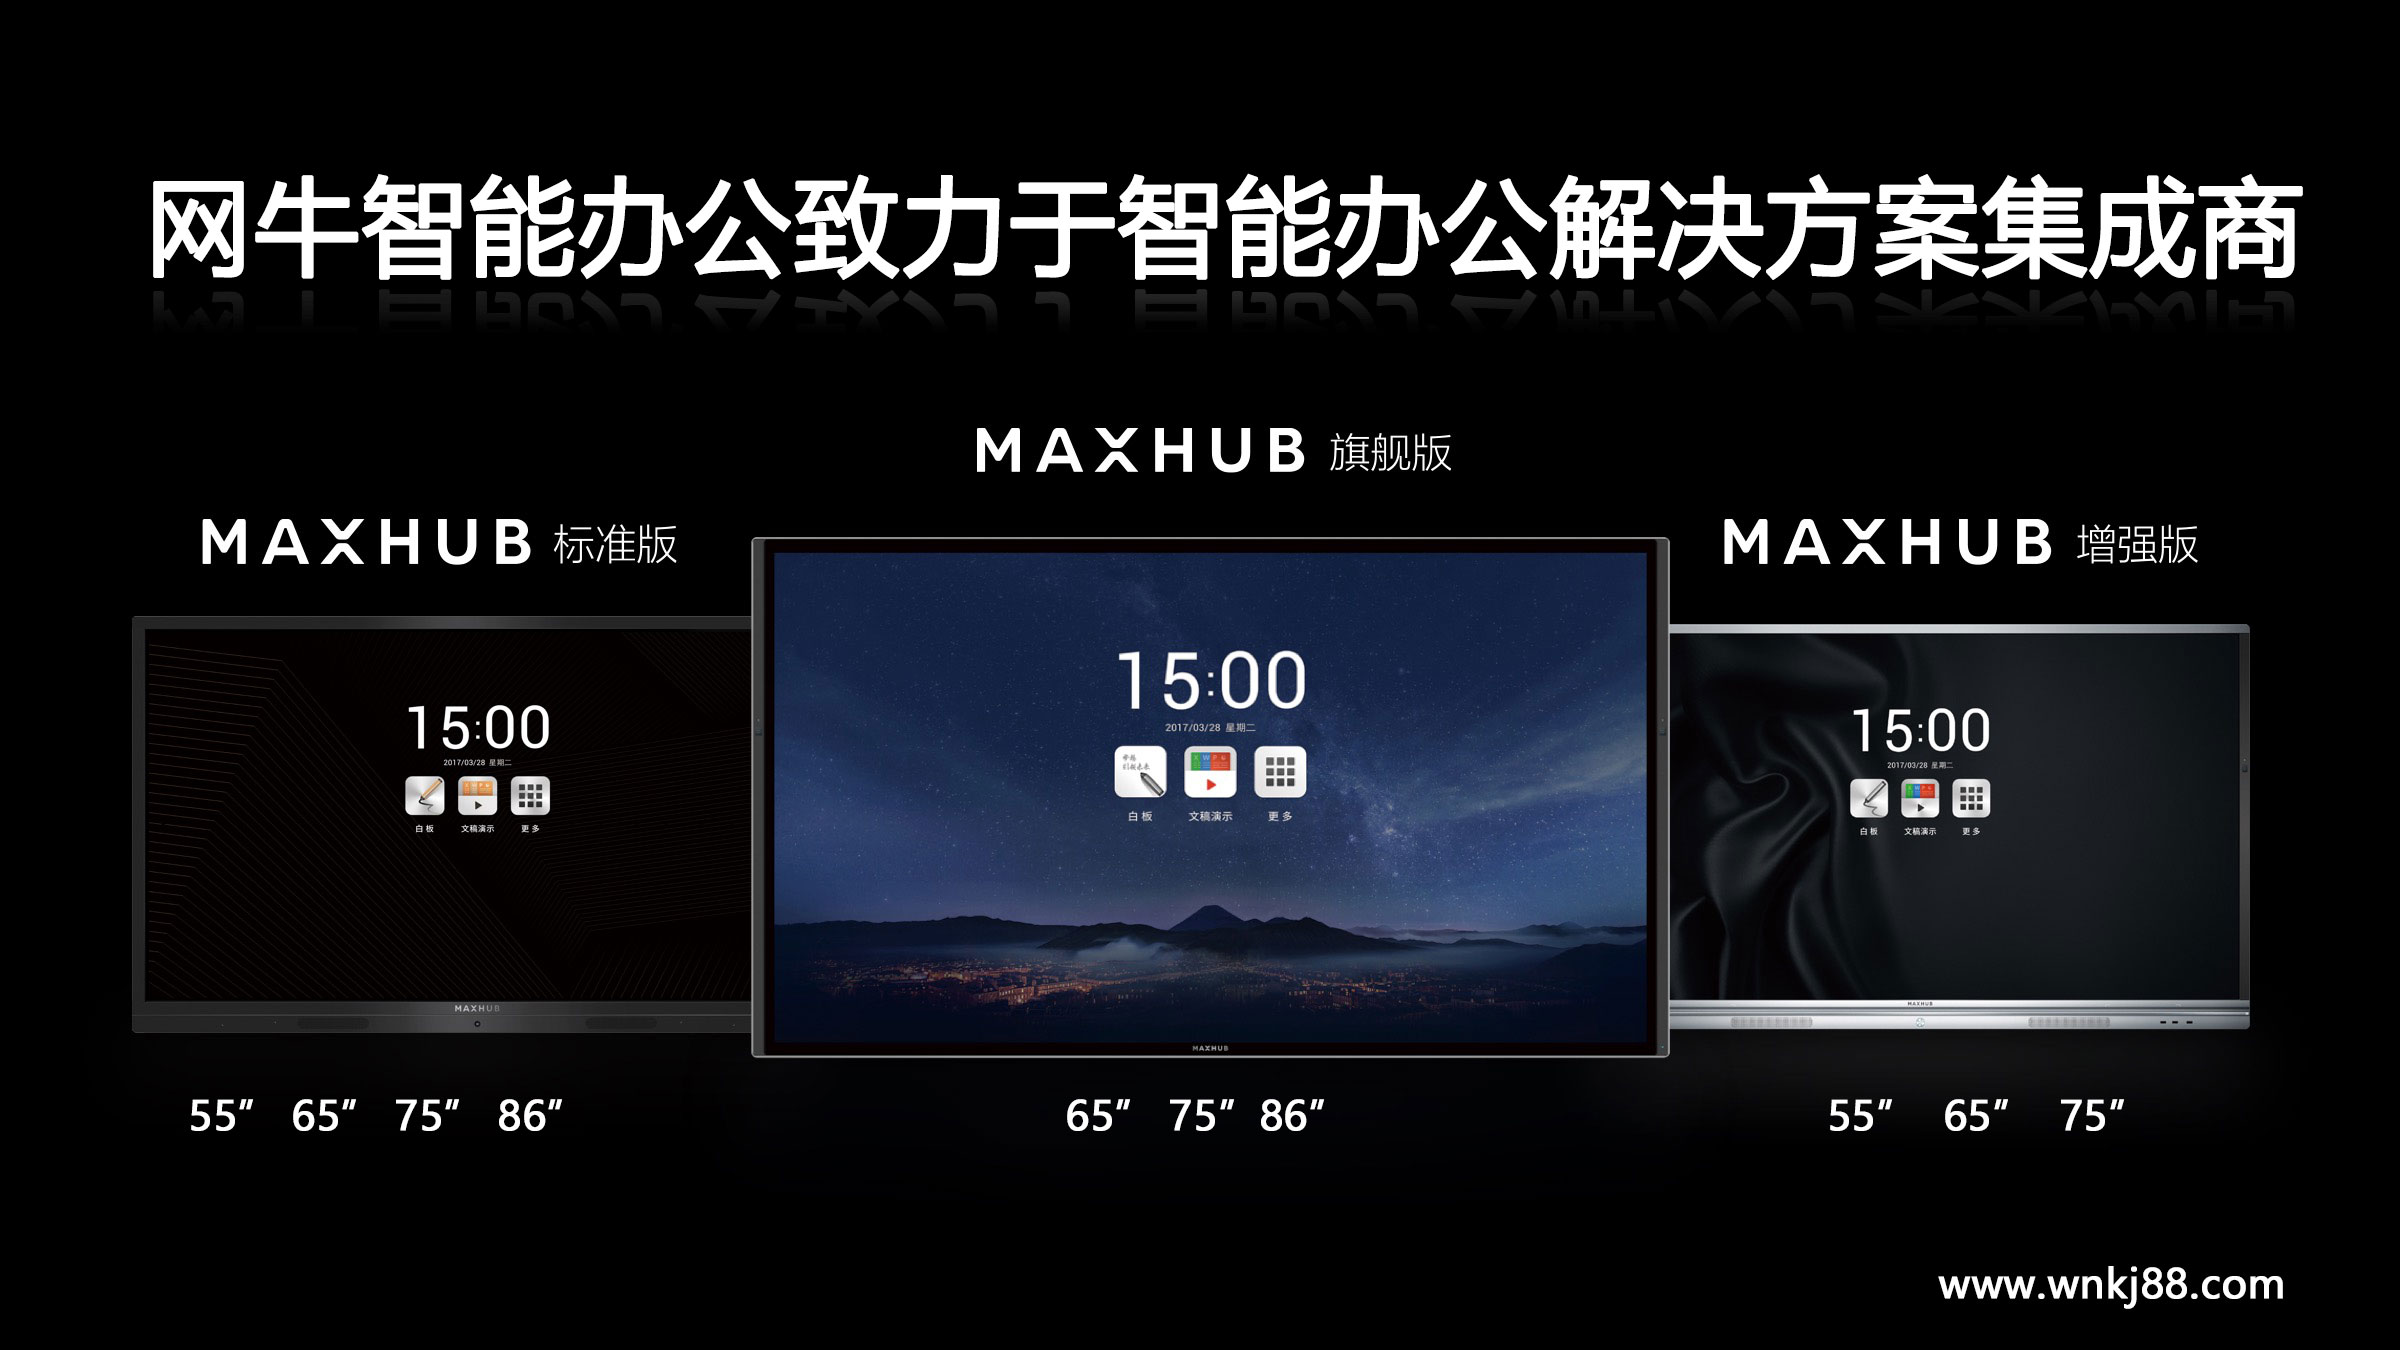 maxhub标准版与增强版区别